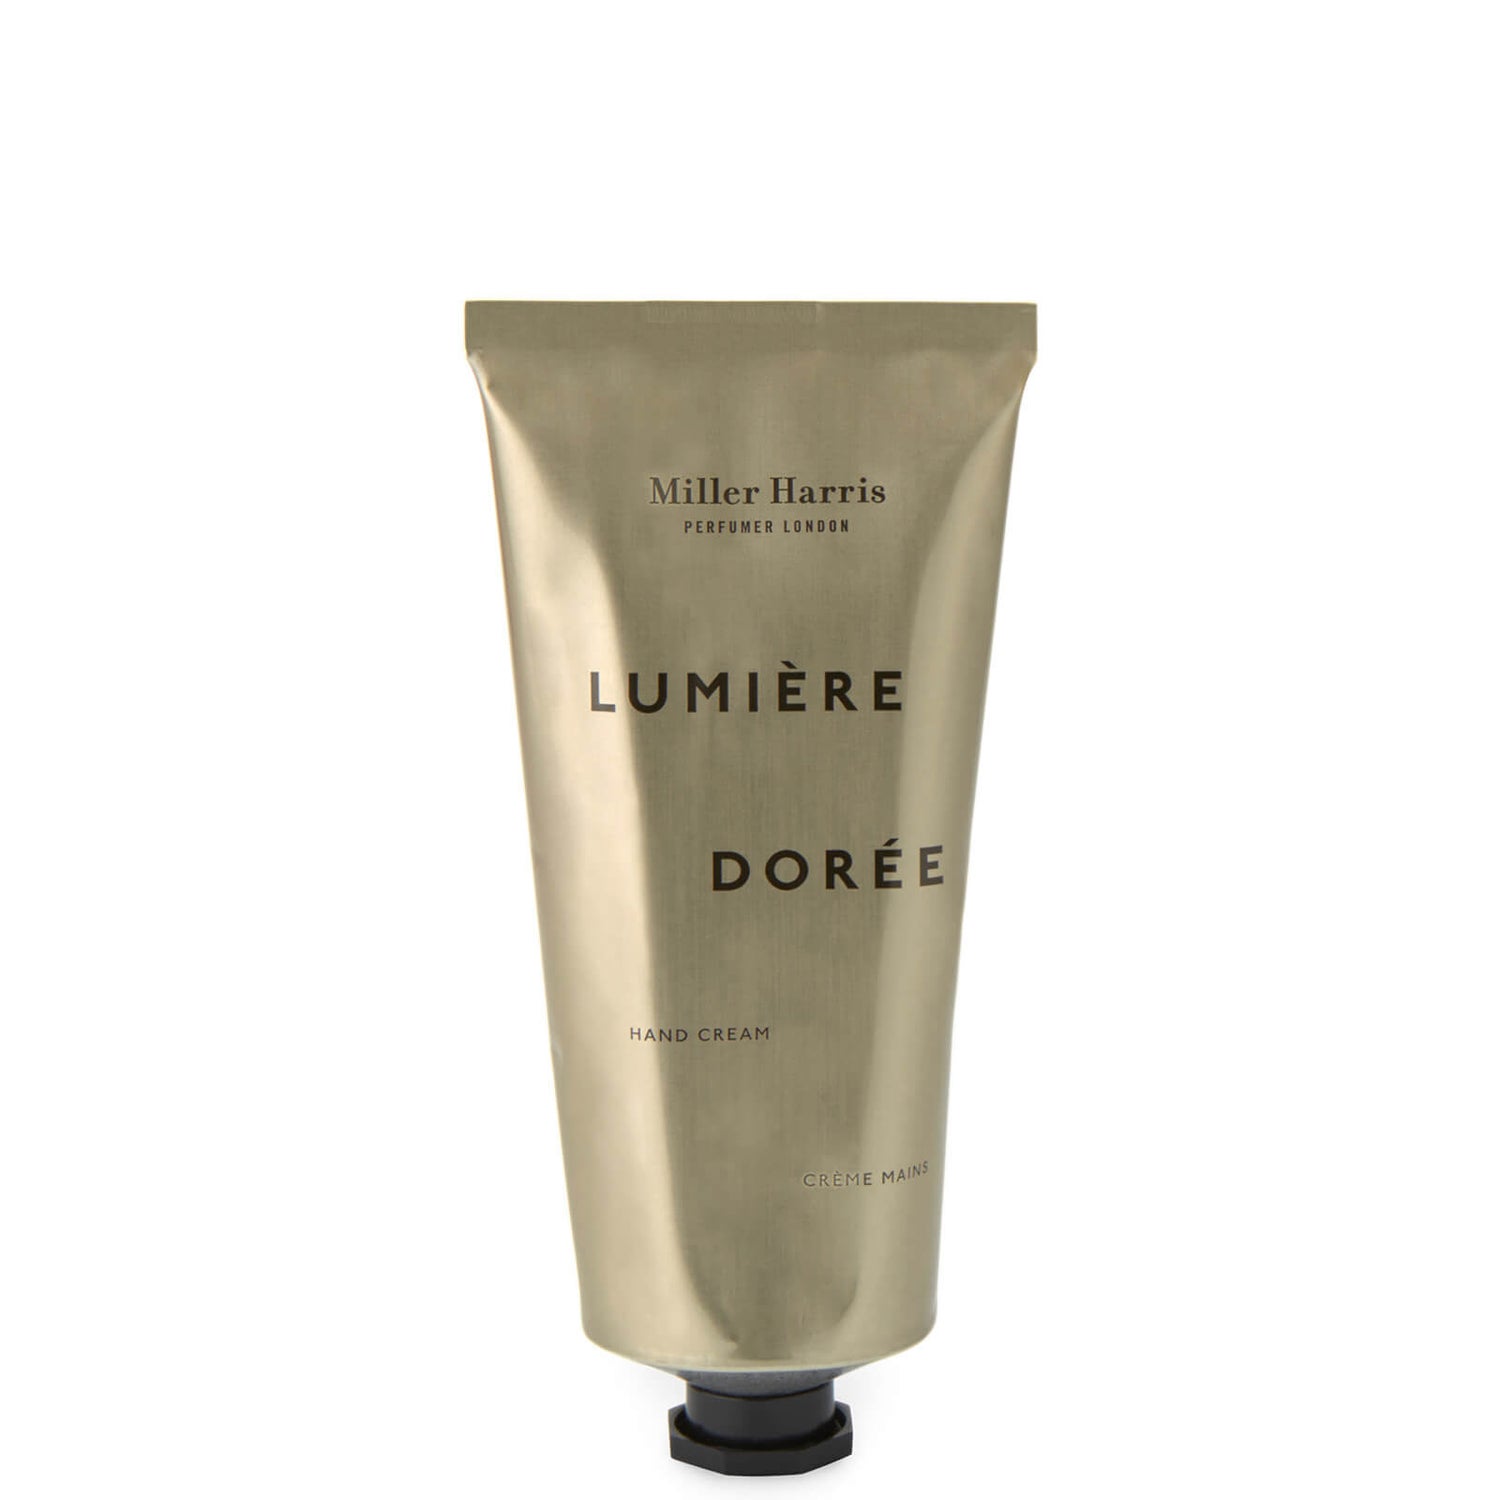 Miller Harris Lumiere Doree Hand Cream 75ml